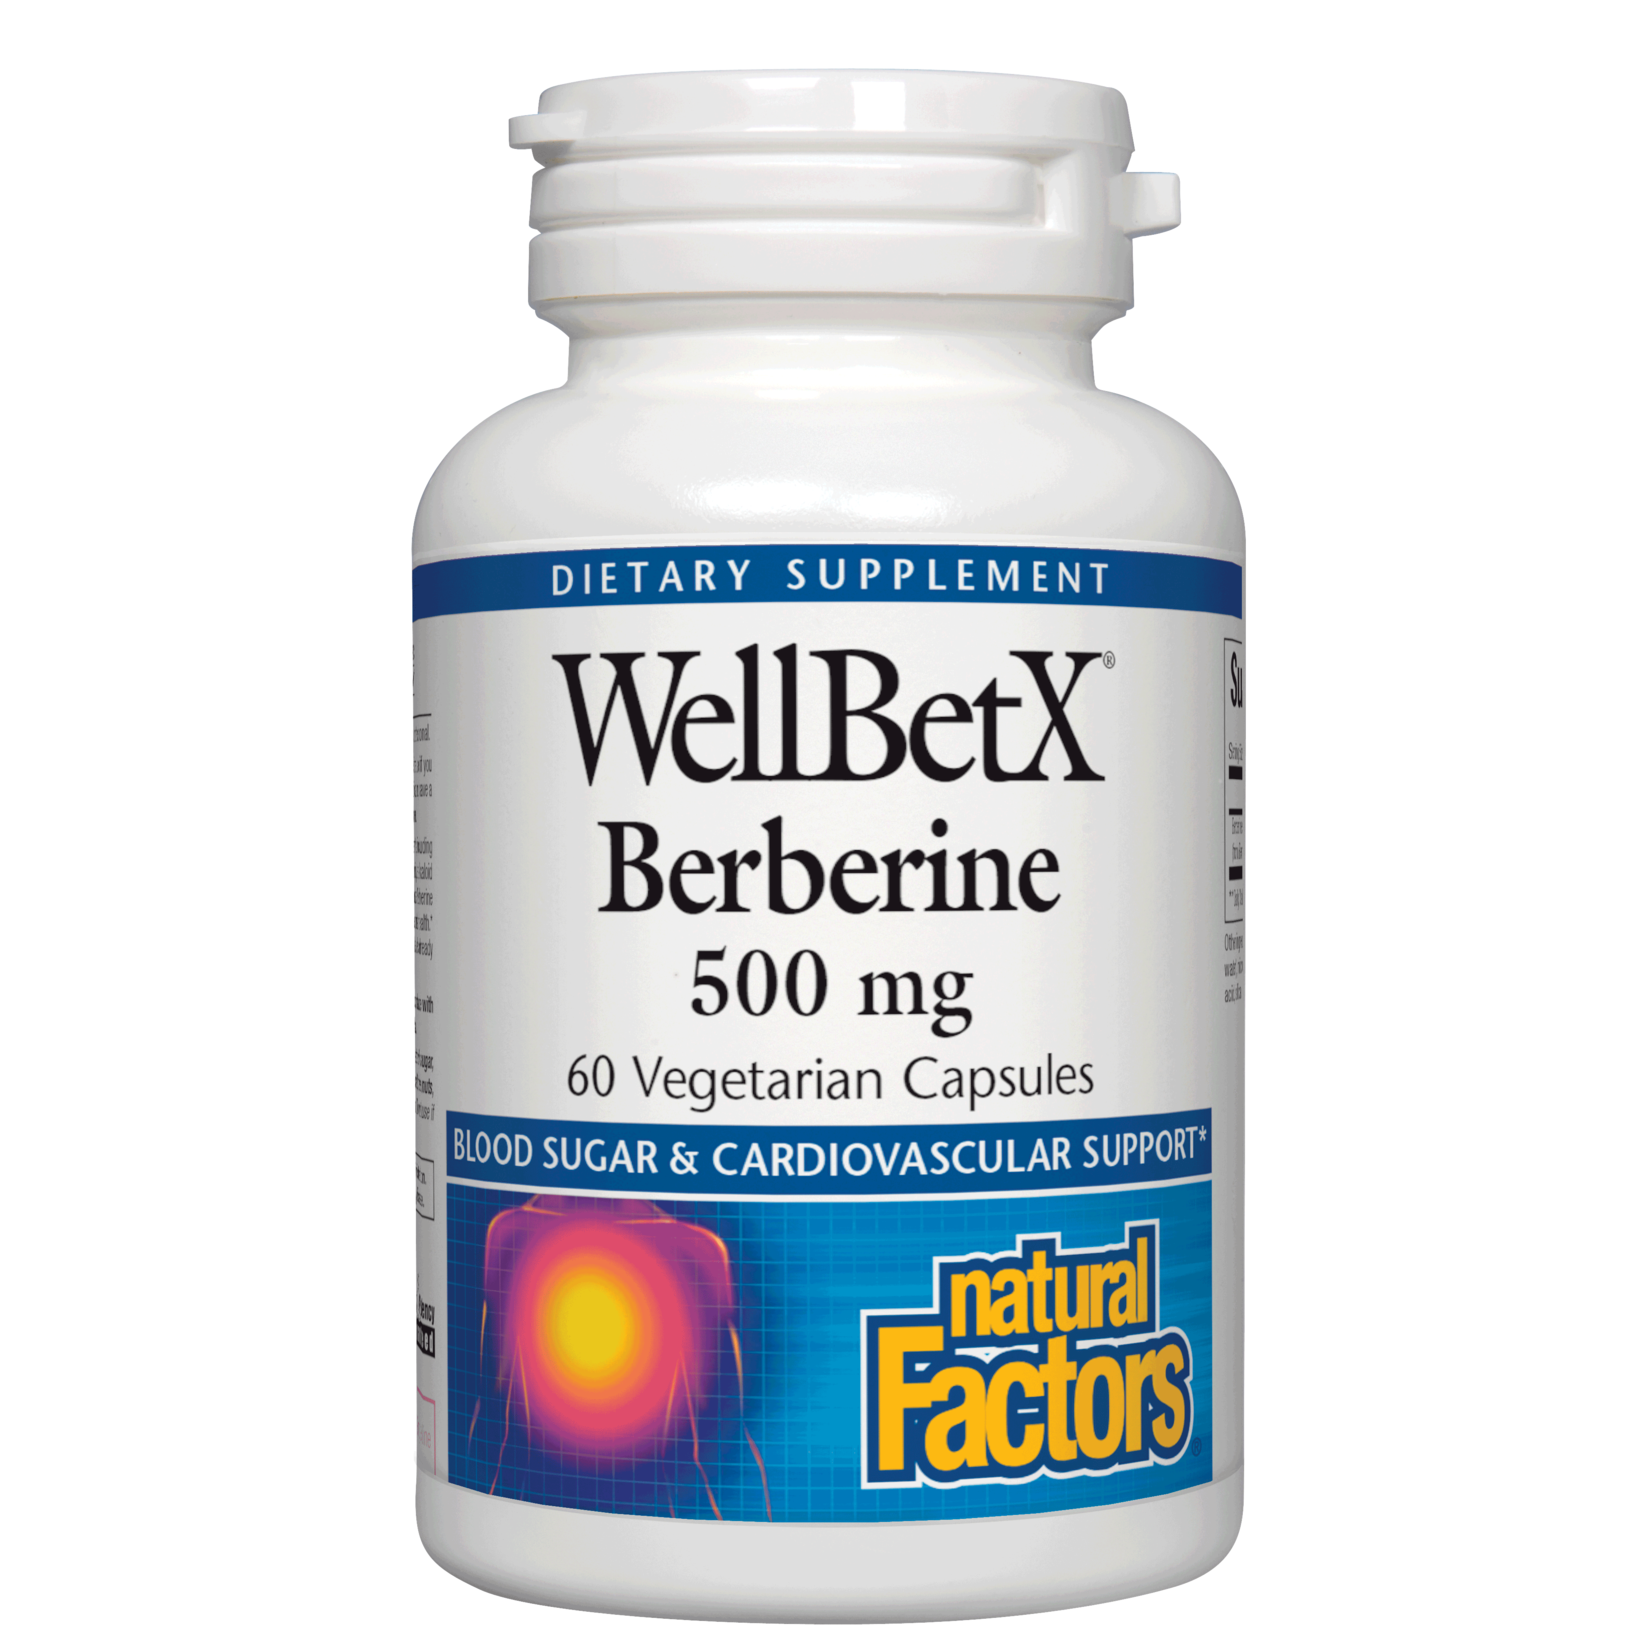 Natural Factors Natural Factors - Wellbex Berberine - 60 Veg Capsules